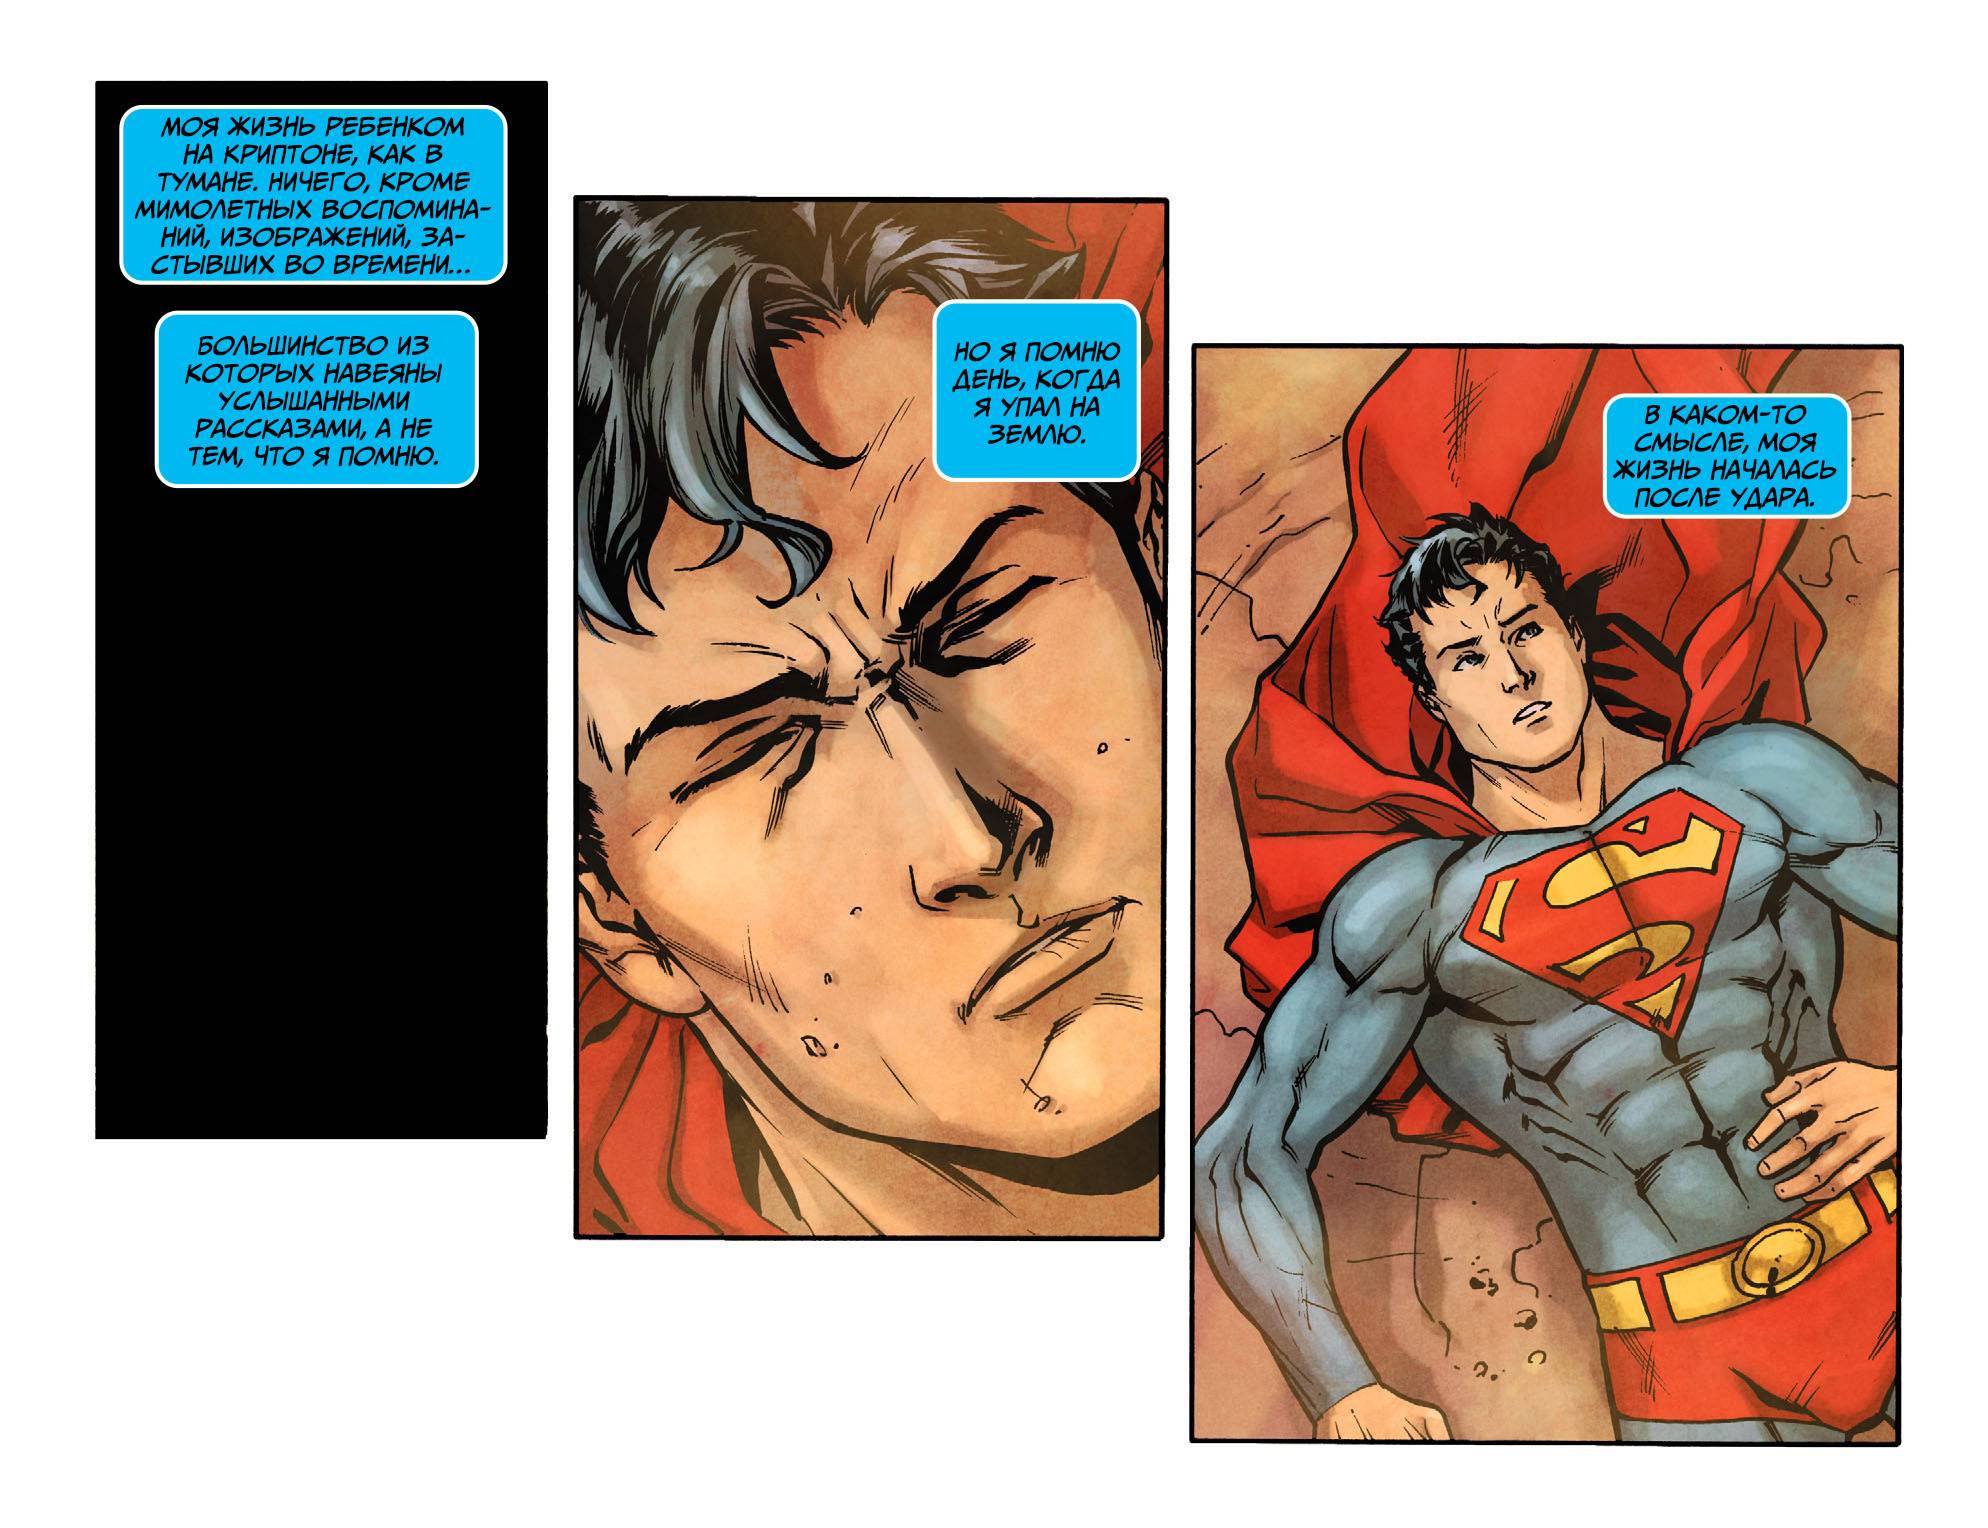 Приключения Супермена №18 онлайн